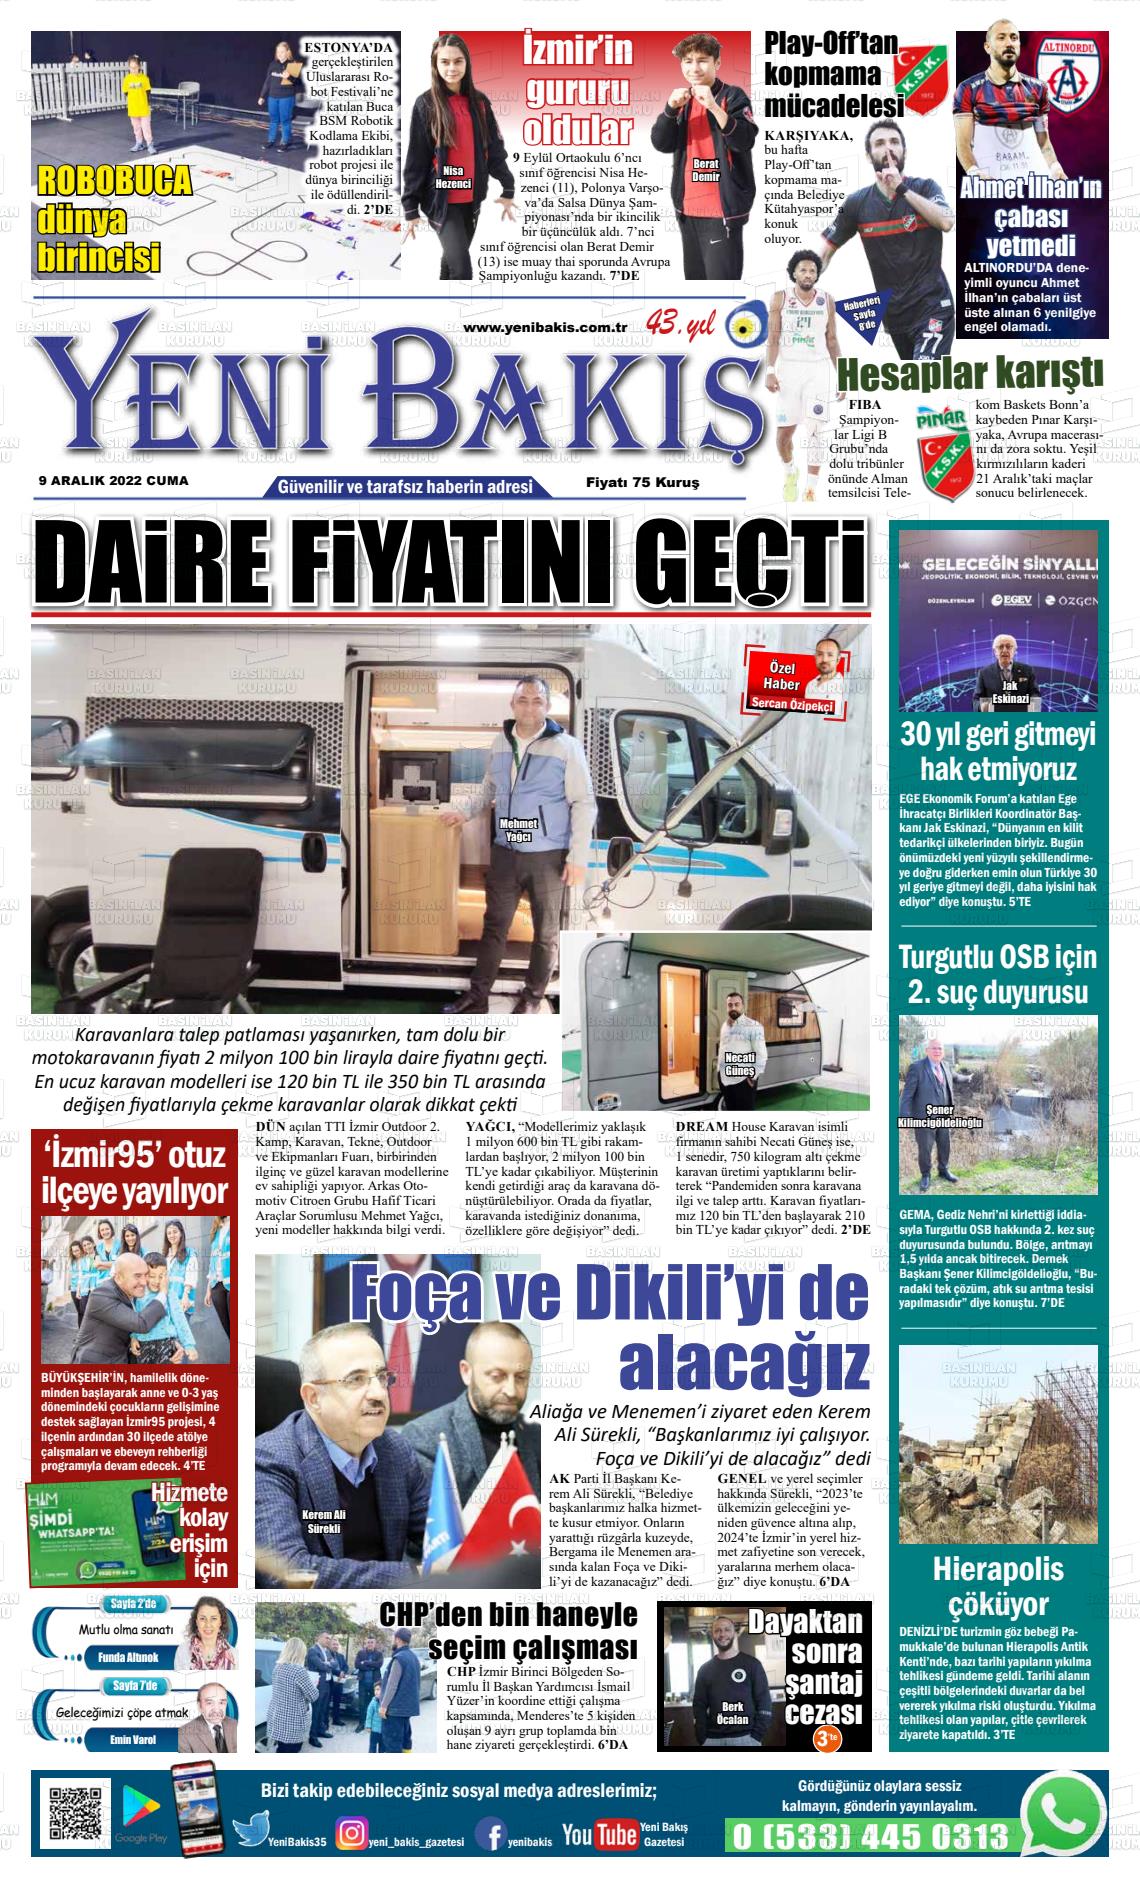 09 Aralık 2022 Yeni Bakış Gazete Manşeti